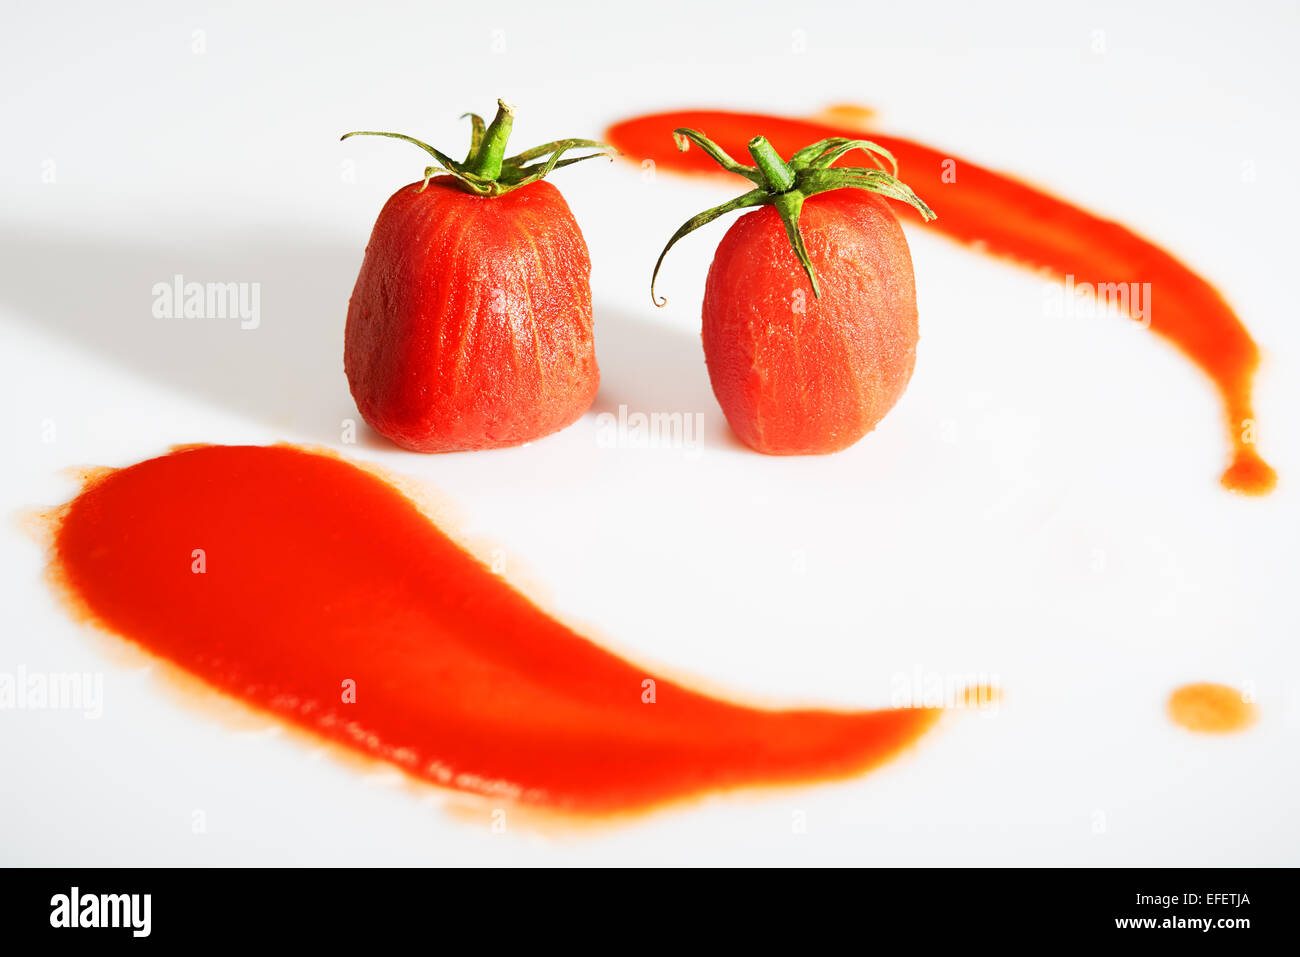 Pomodori pelati con steli sulla parte superiore e salsa di pomodoro intorno a loro Foto Stock